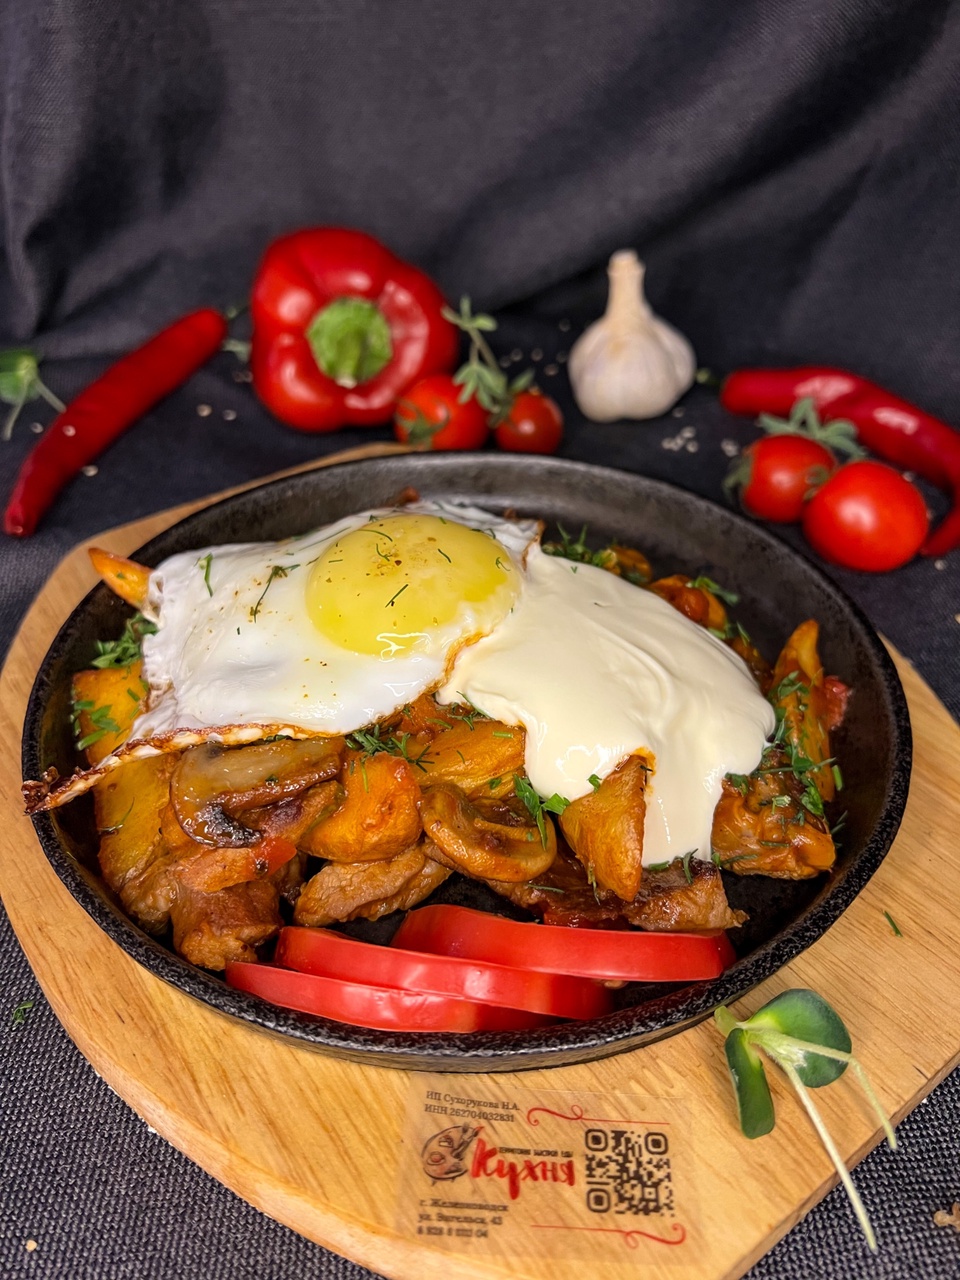 Свинина с картофелем,  грибами, в томатном соусе, помидор,зелень,лук  и яйцо-глазунья - 250 ₽, заказать онлайн.